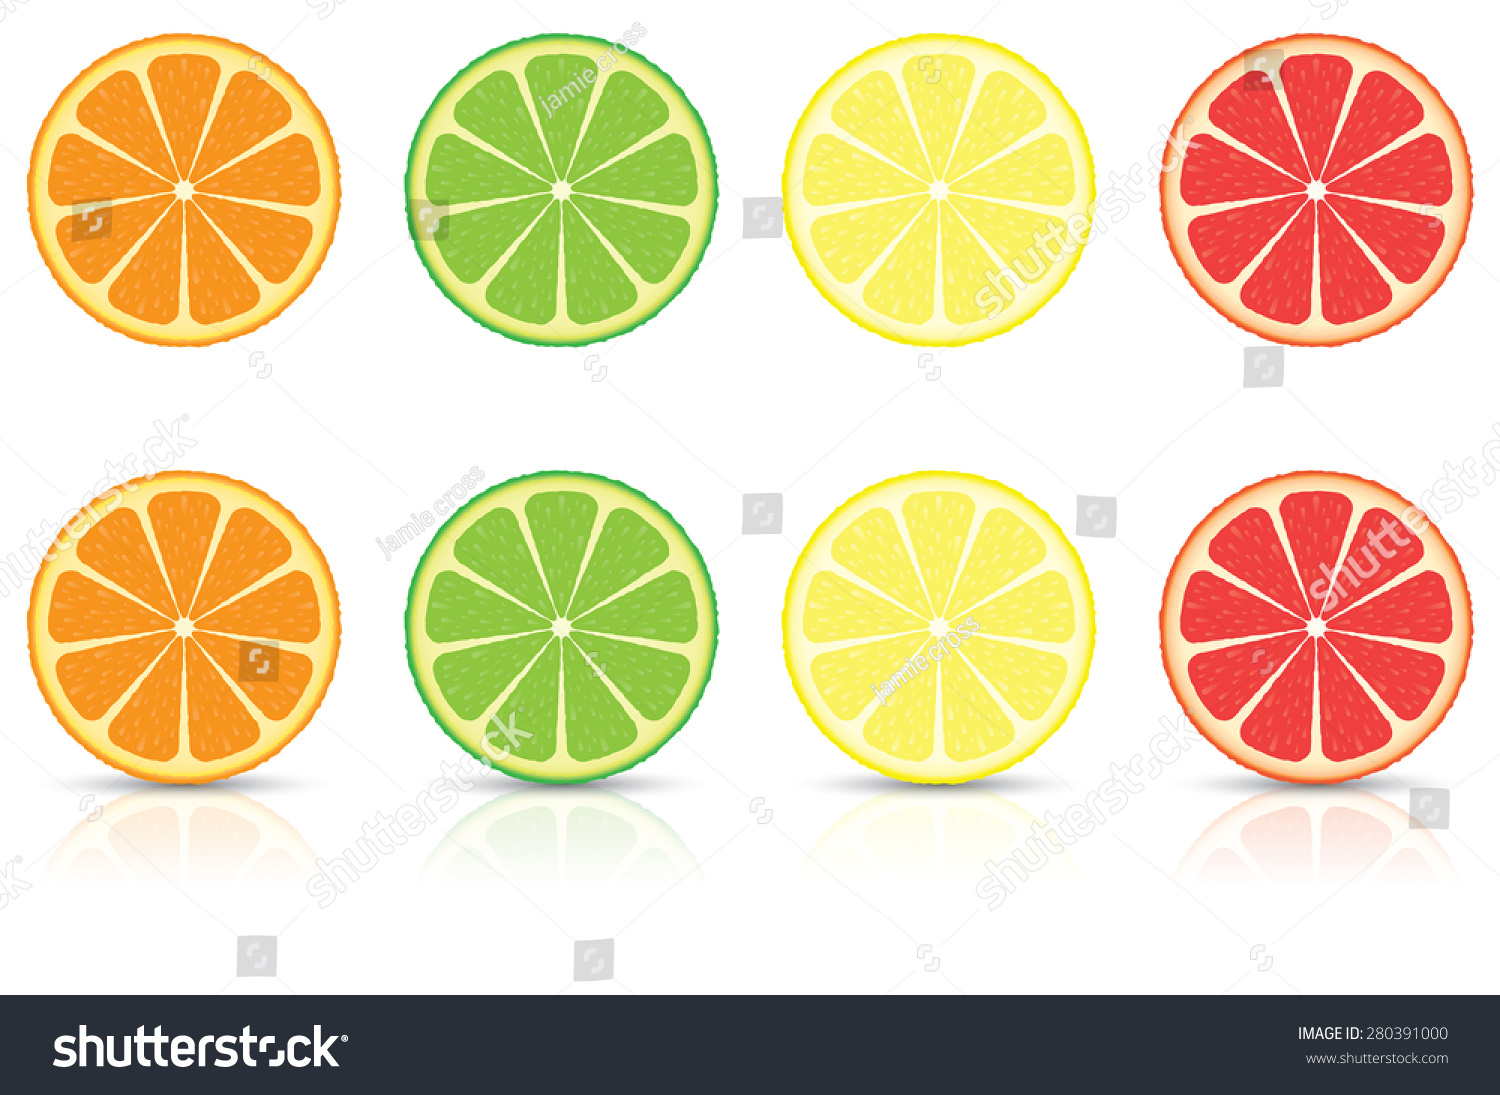 橙、柠檬、酸橙和葡萄柚柑橘类的水果片 - 食品